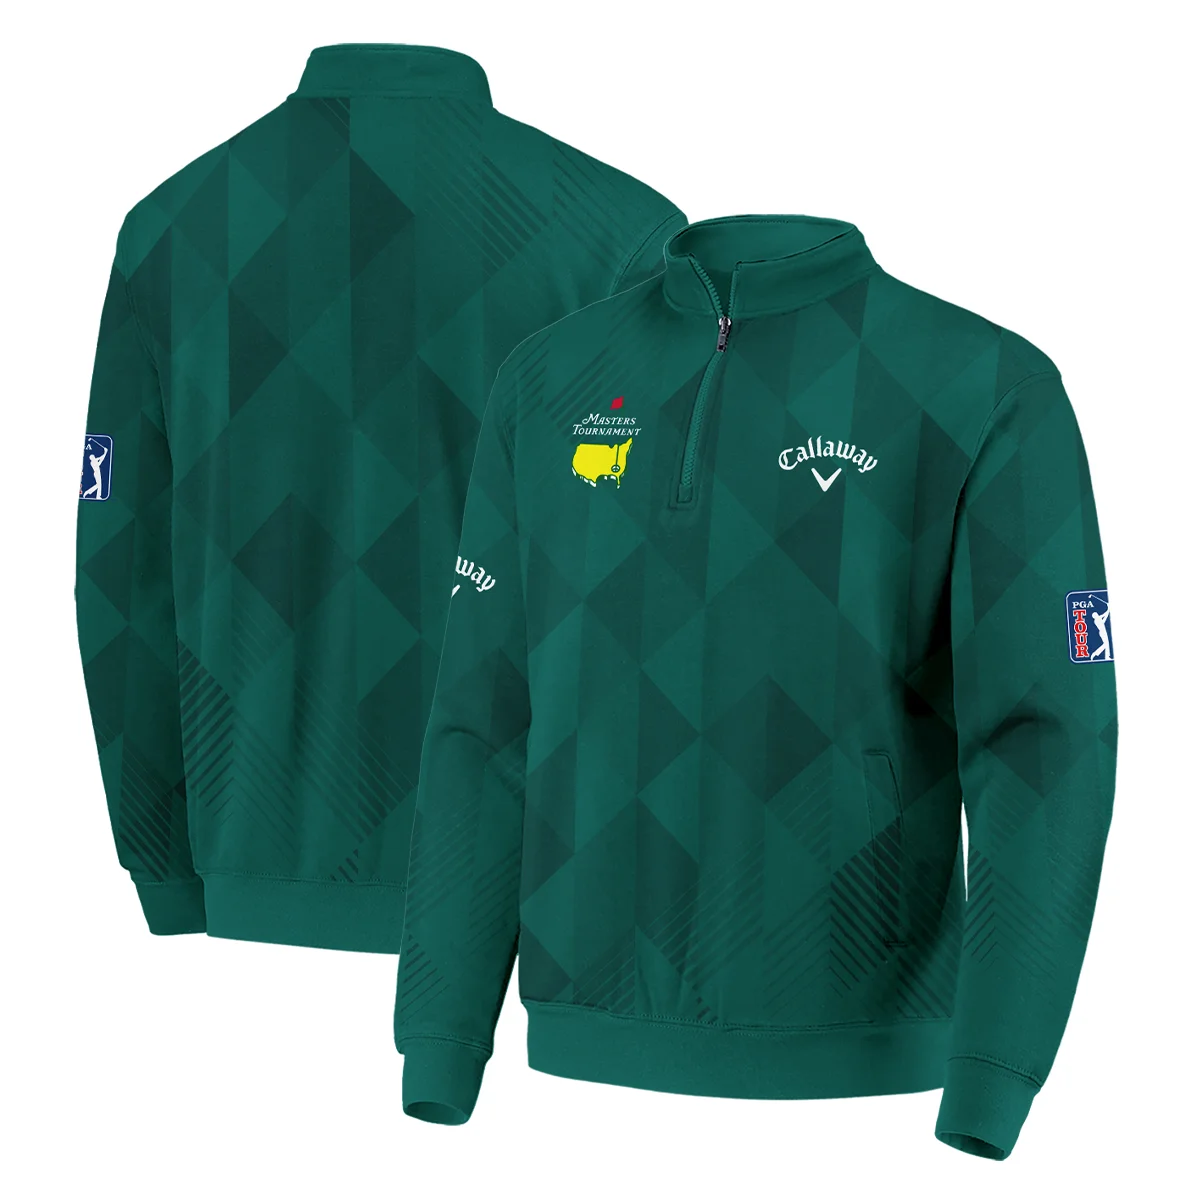 Masters Tournament Golf Sport Callaway Zipper Hoodie Shirt Sports Triangle Abstract Green Zipper Hoodie Shirt